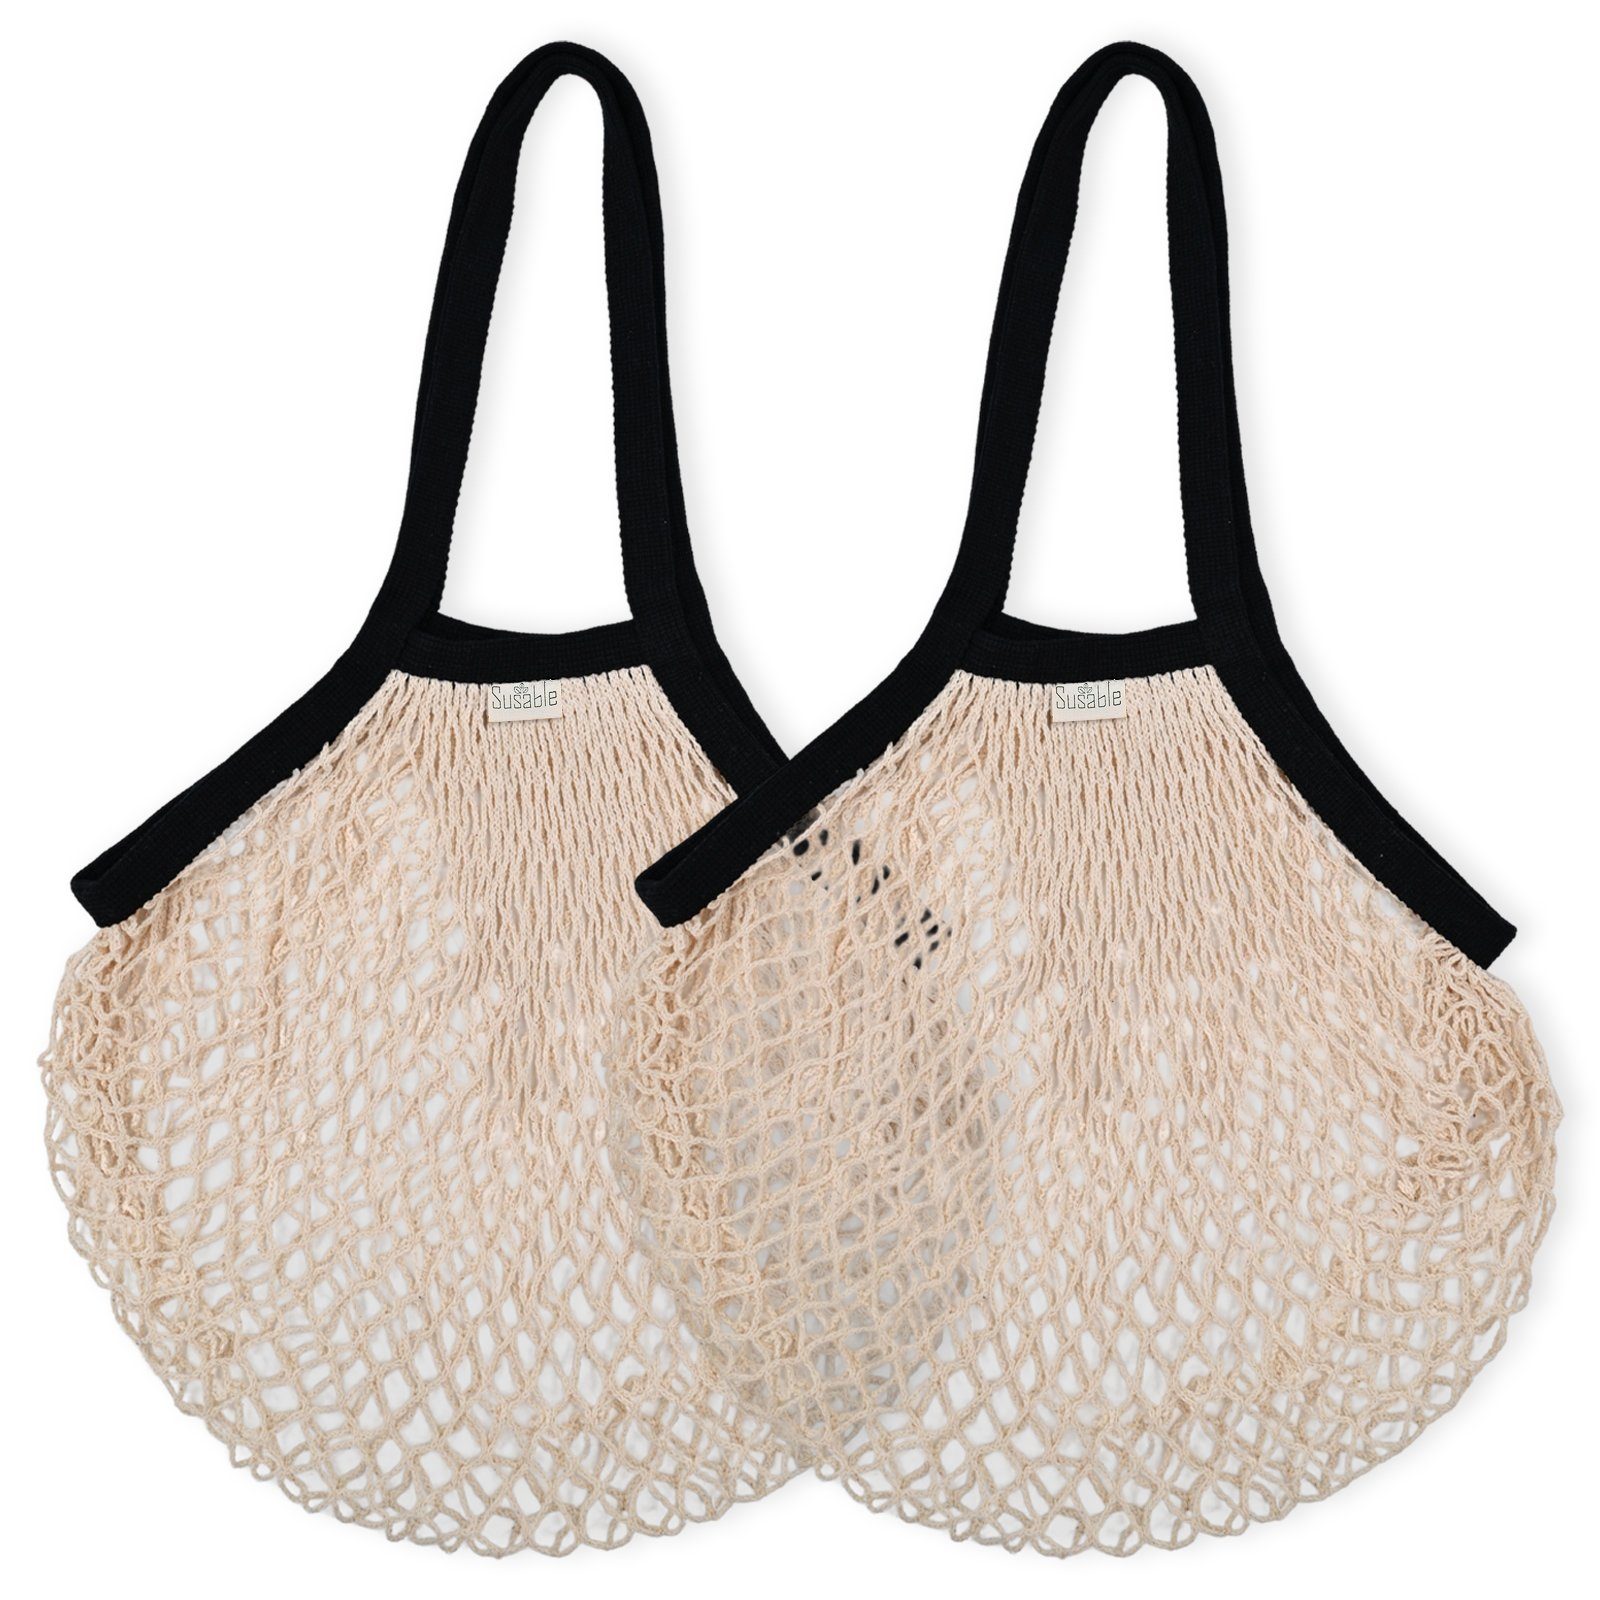 Schultertasche Netztasche Bio-Baumwolle Einkaufstasche Susable aus Vielseitige – 2er-set